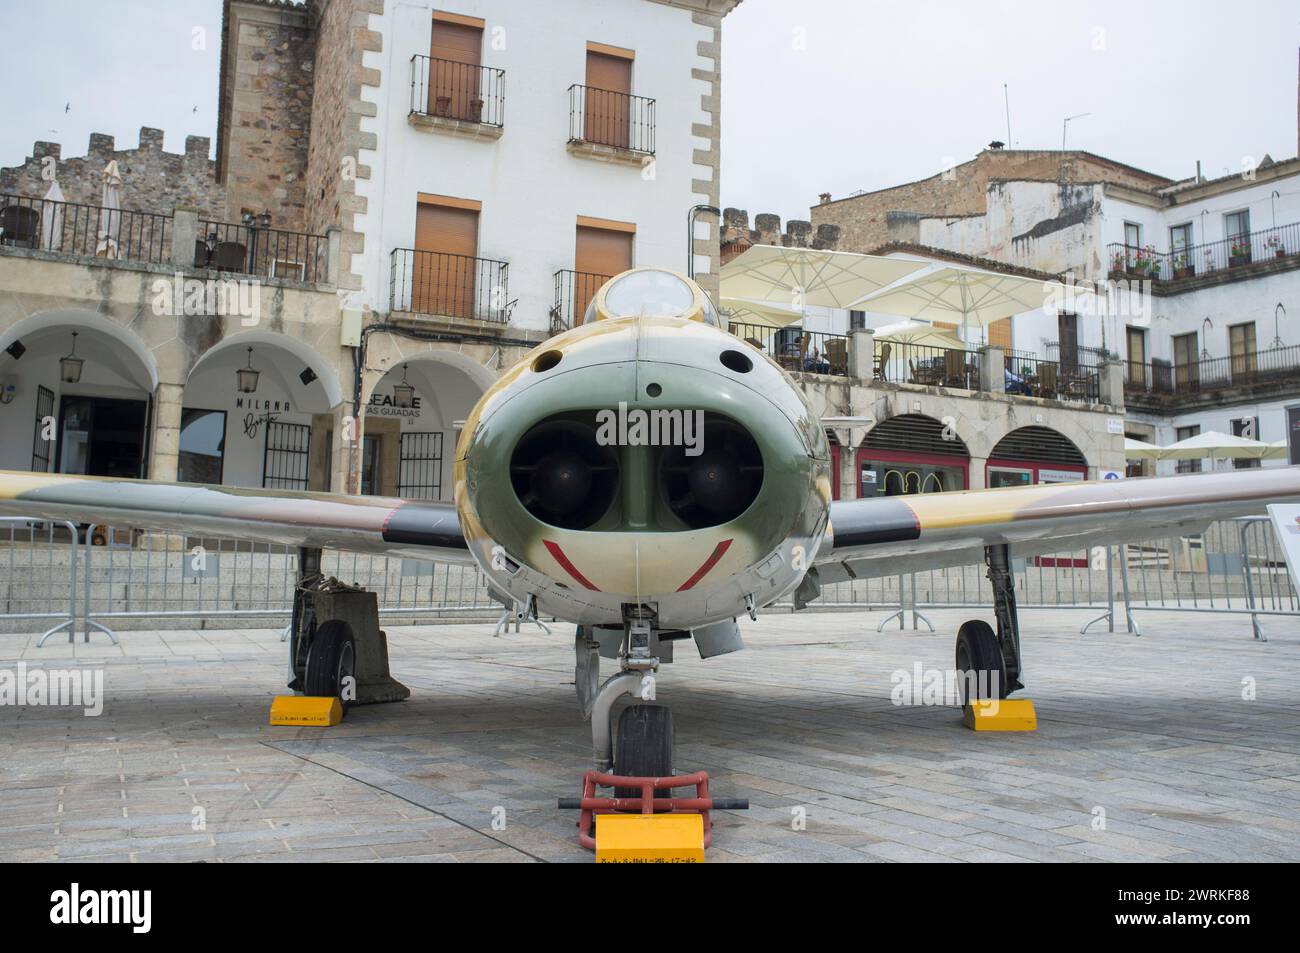 Caceres, Espagne - 27 mai 2021 : Hispano HA-200 Saeta. Exposition de l'aviation militaire espagnole, place principale de Caceres, Espagne Banque D'Images